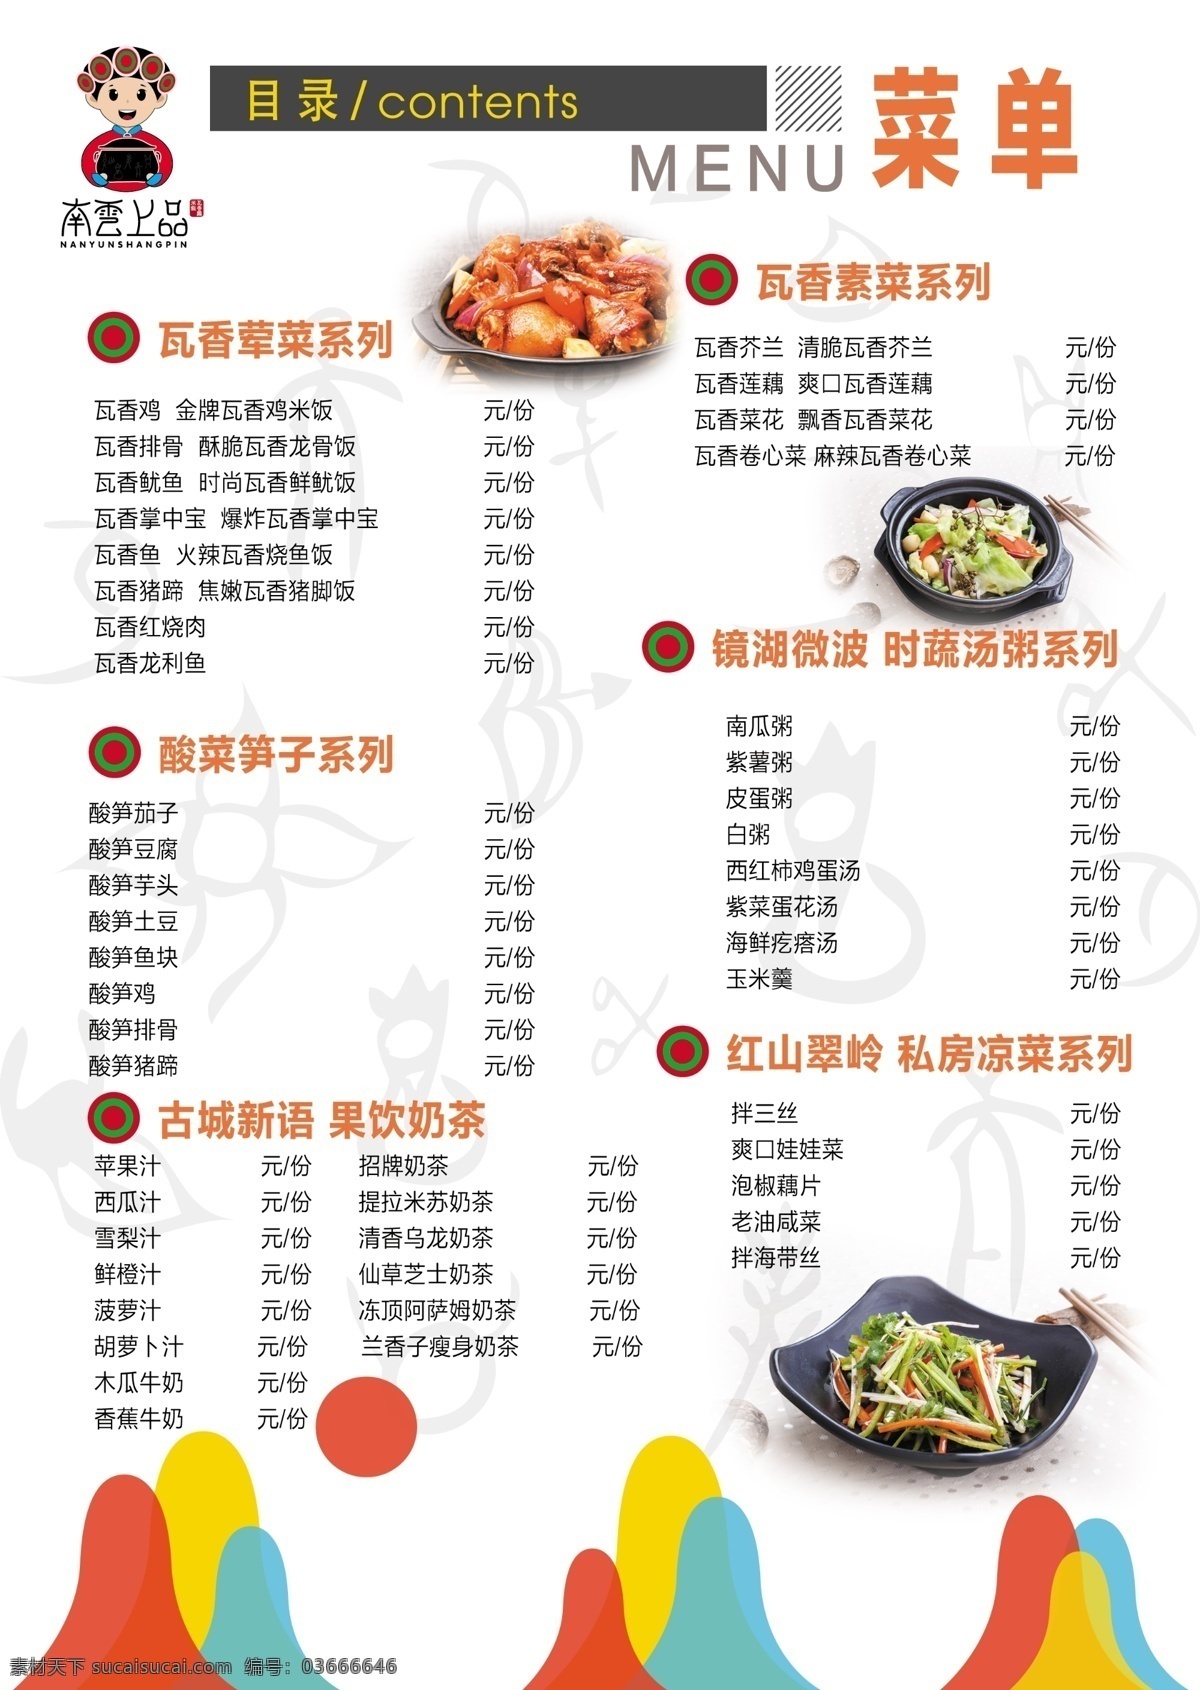 南云上品 瓦香鸡米饭 价格表 灯箱片 中国美食 餐饮海报 分层